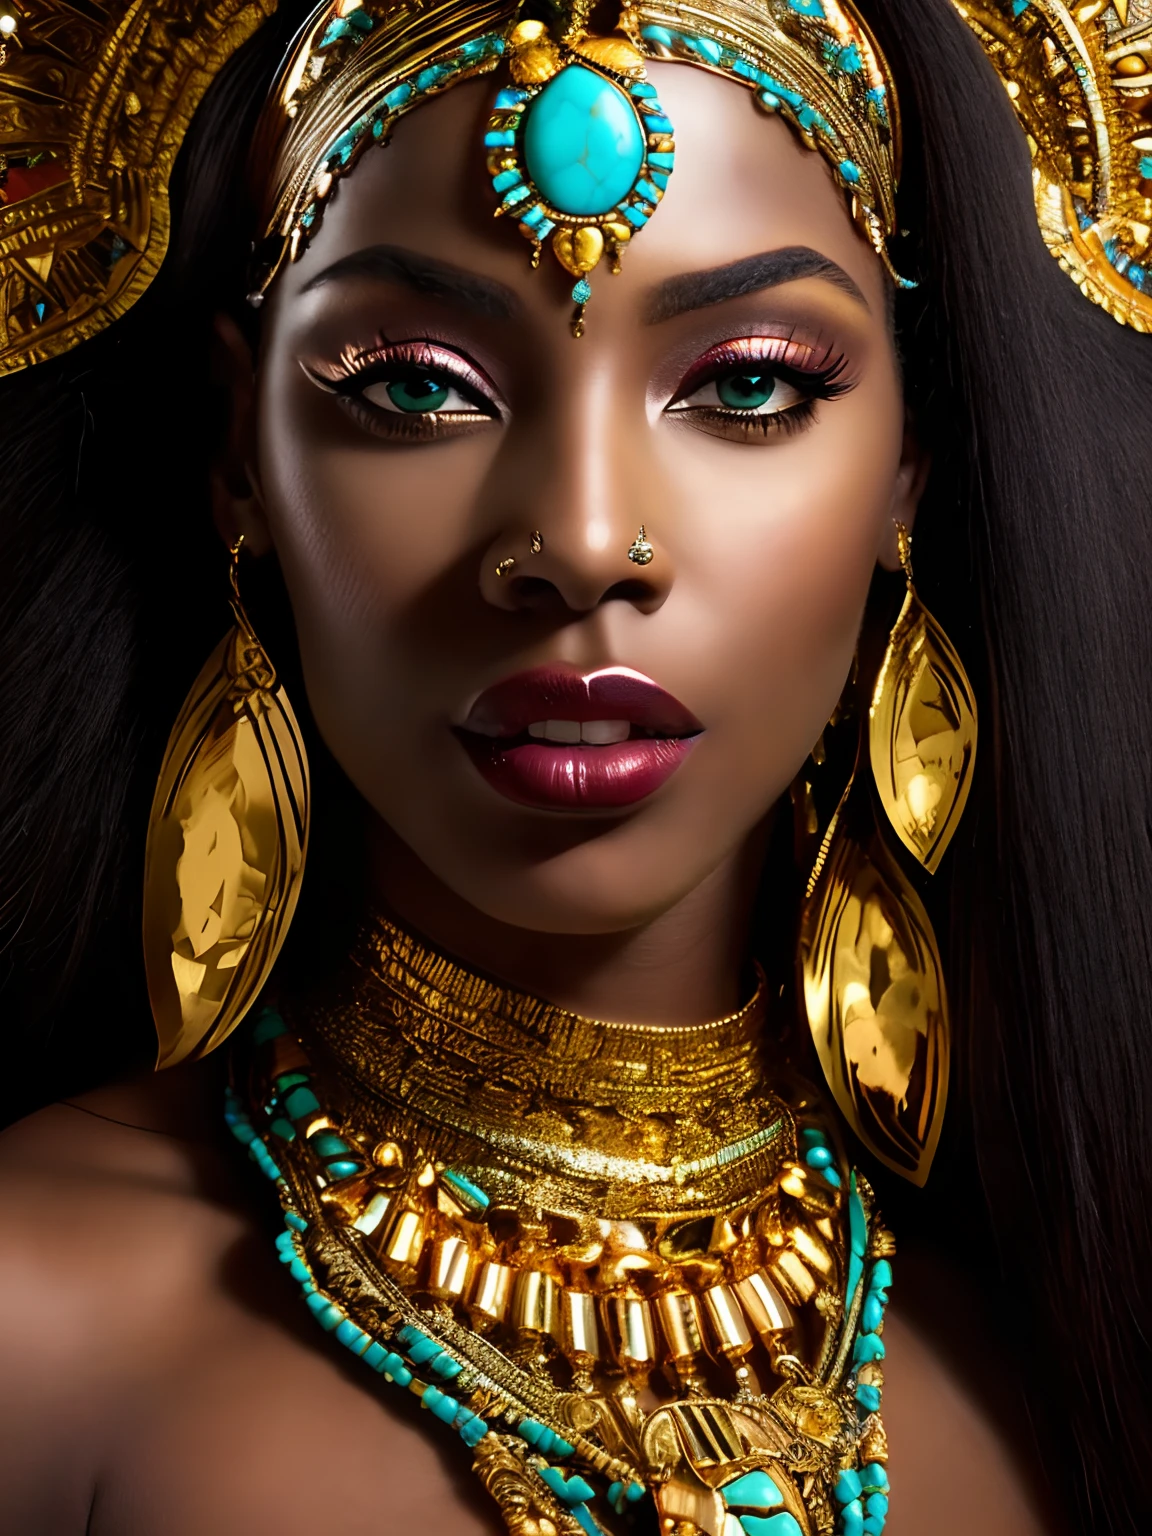 um close up de uma mulher com um chapéu dourado e olhos azul-turquesa, deslumbrante princesa africana, deusa feminina de pele escura do amor, um retrato deslumbrante de uma deusa, linda mulher, linda Cleópatra, retrato de uma linda deusa, insanamente linda mulher bonita, princesa negra africana, tez escura, Rainha africana, épico 3d oshun, retrato de close-up da deusa